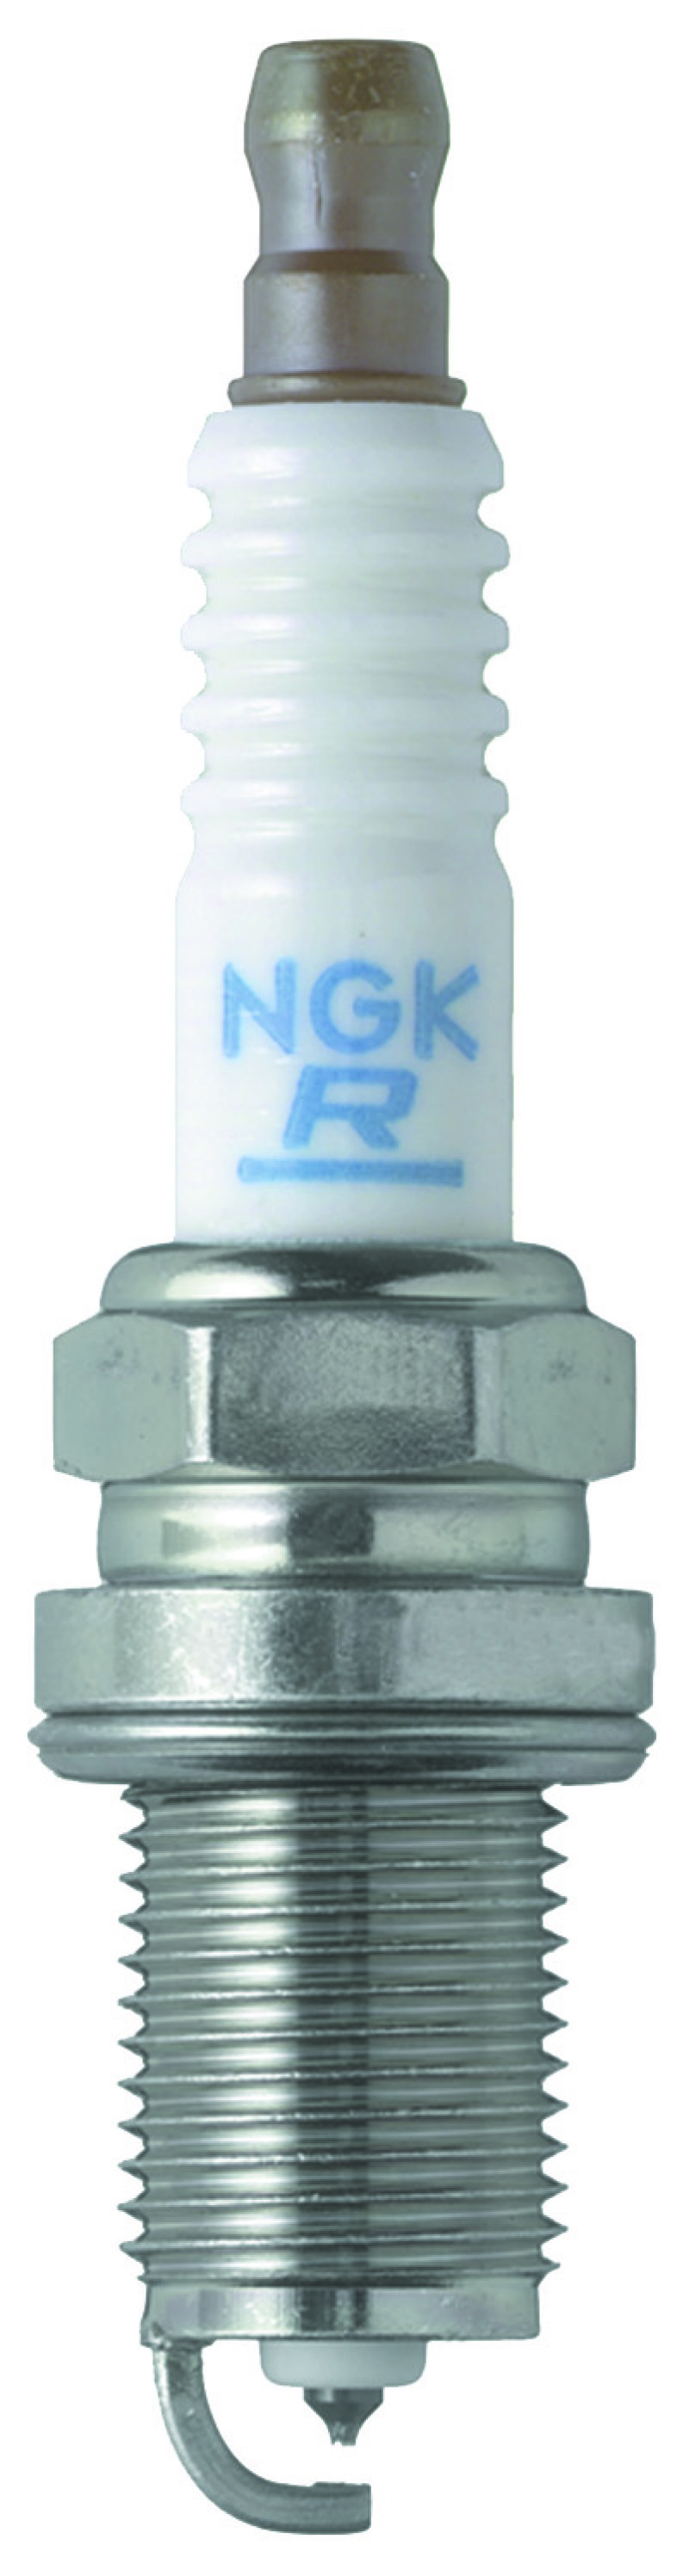 NGK Laser Platinum Spark Plug Box of 4 (PFR5L-11) - 5459